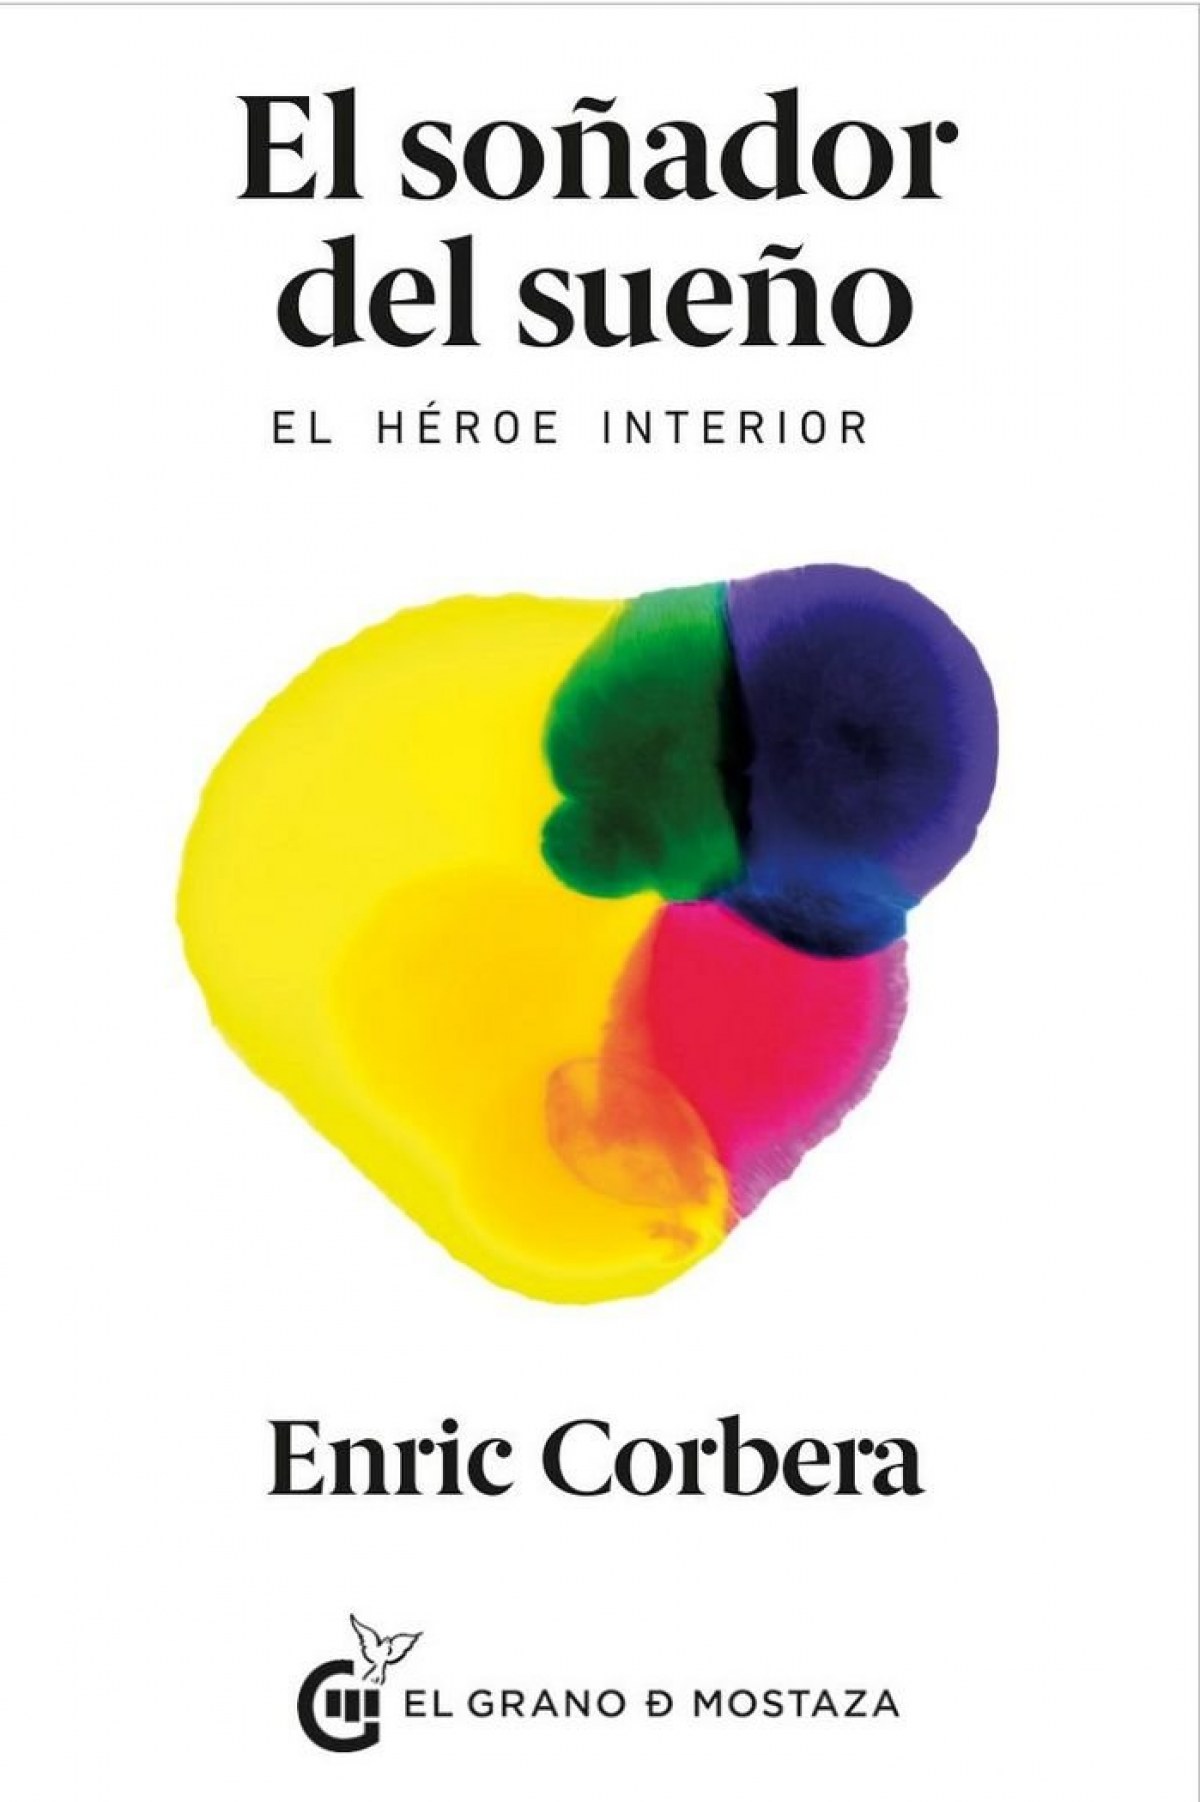 Soñador del sueño, El Enric Corbera Sastre Author